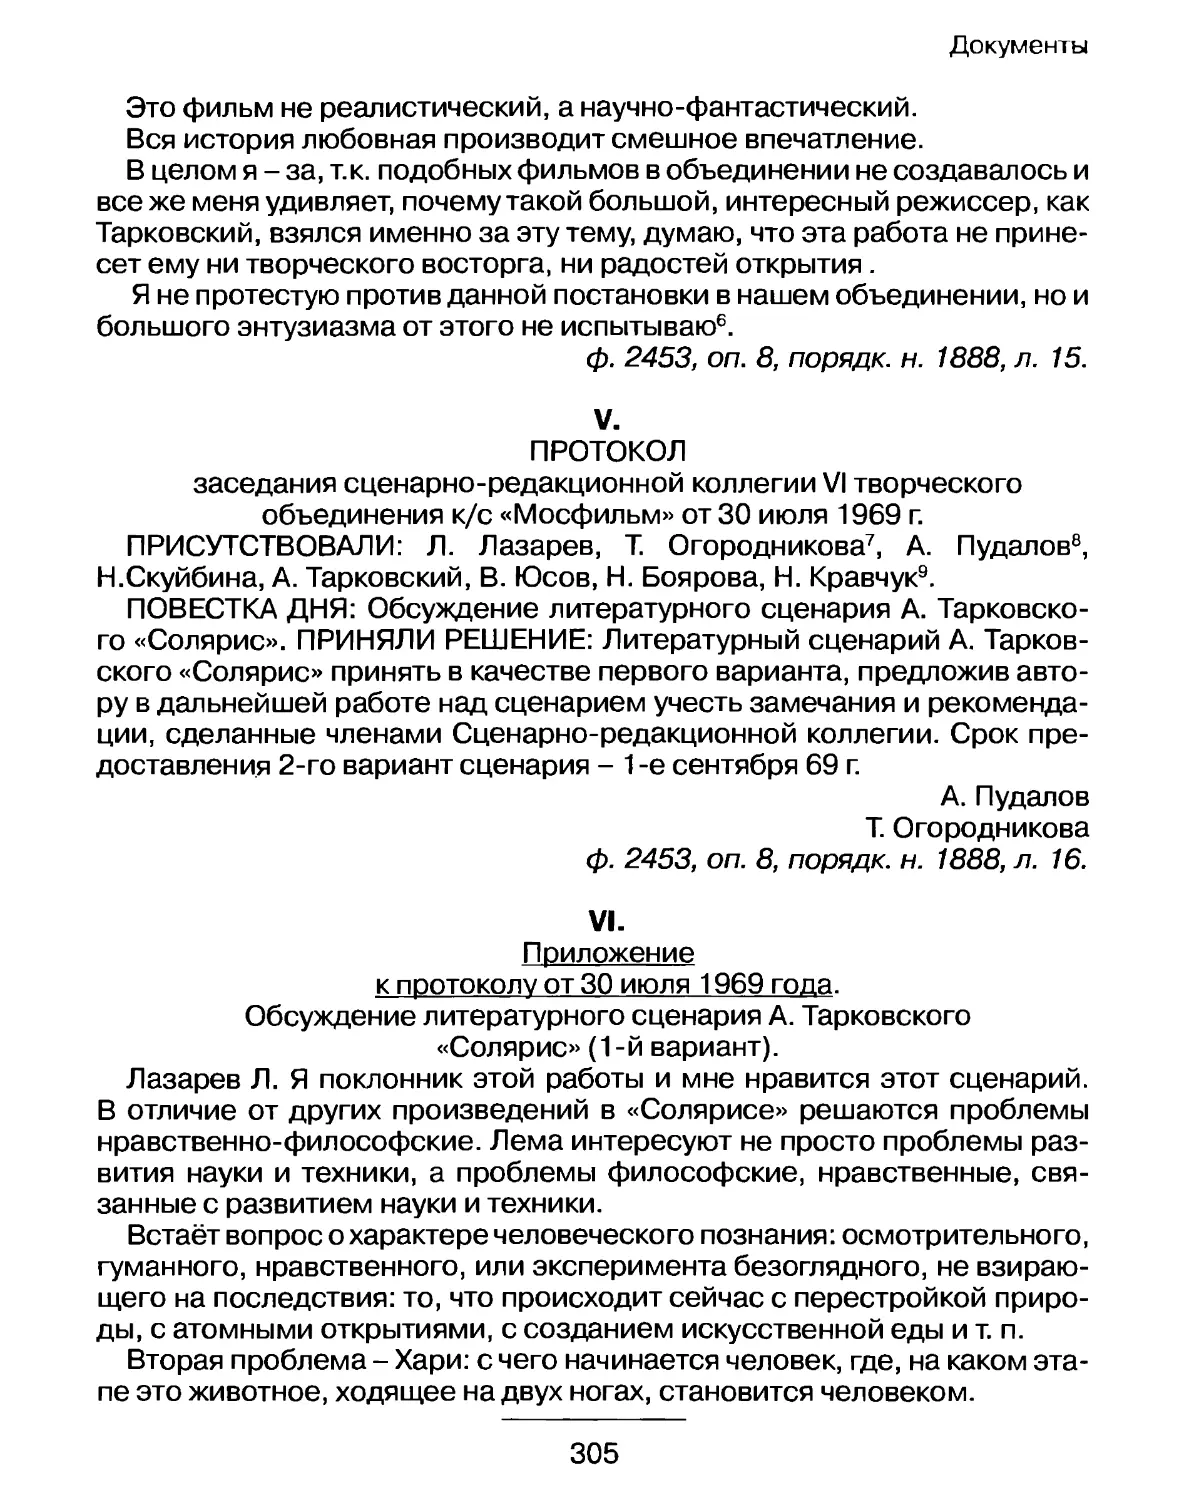 Протокол заседания сценарно-редакционной коллегии VI творческого объединения к/с «Мосфильм» от 30 июля 1969 г.